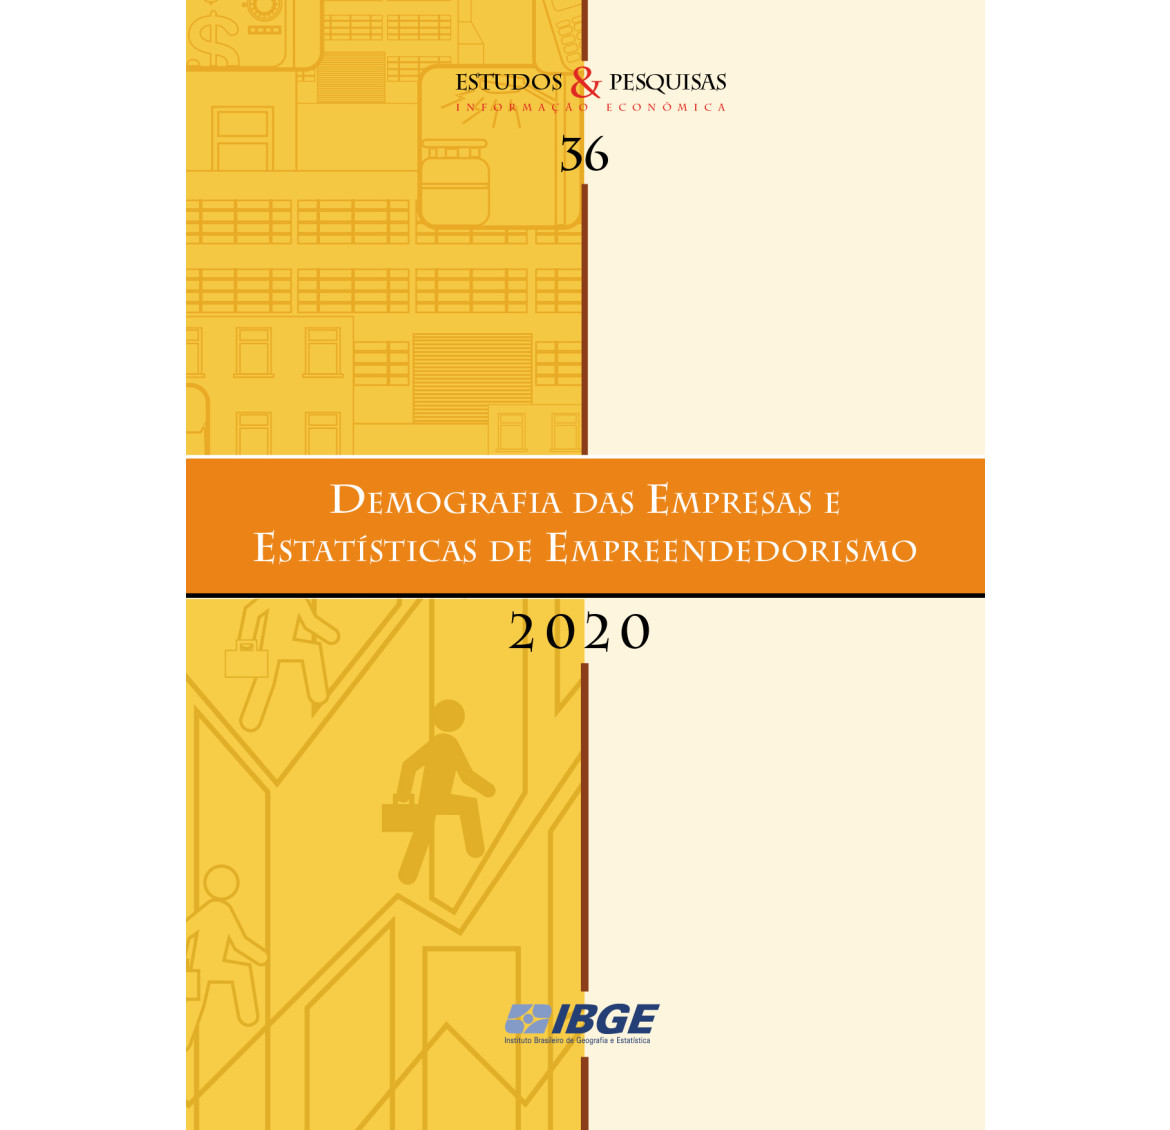 Demografia das Empresas e Estatísticas de Empreendedorismo 2020